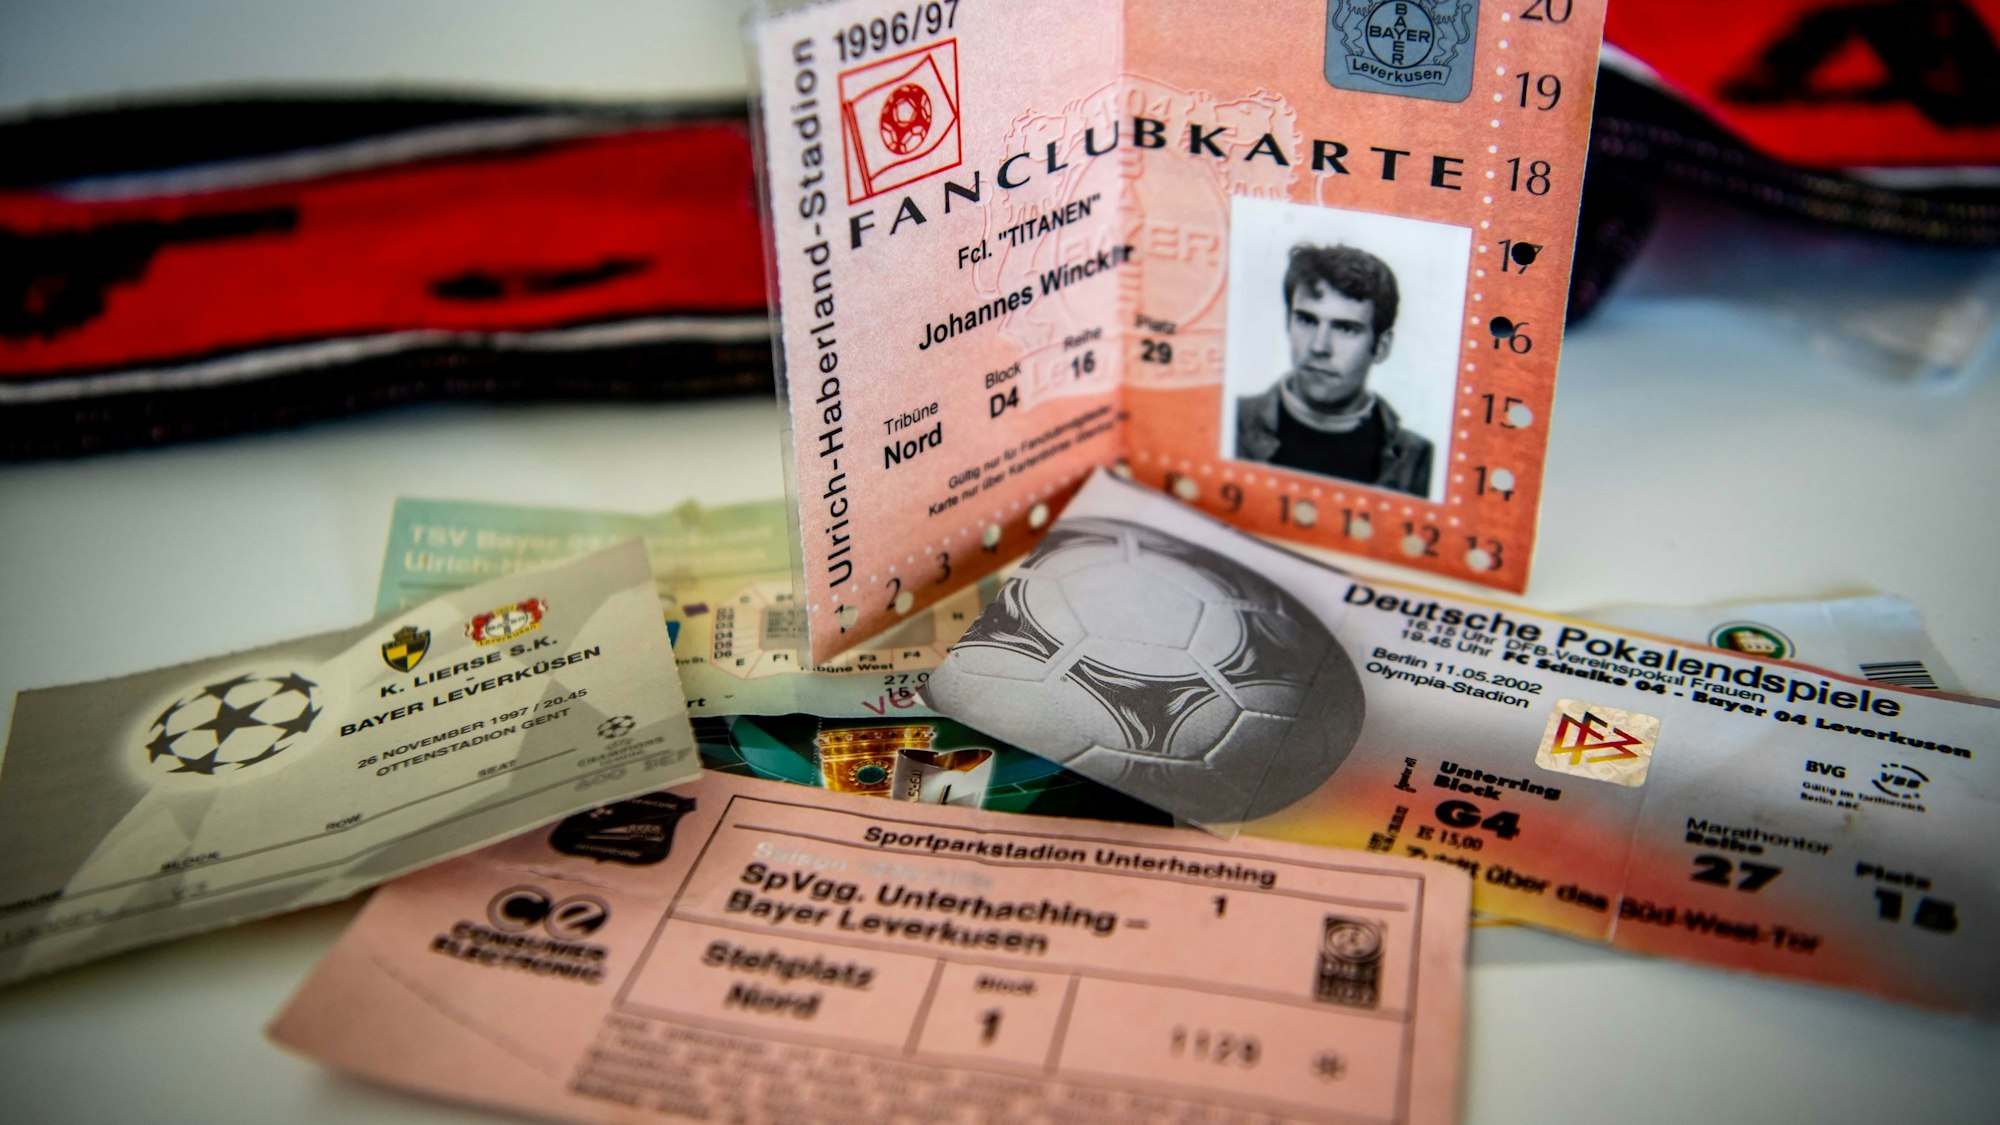 Das Bild zeigt diverse Eintrittskarten von Bayer Leverkusen.